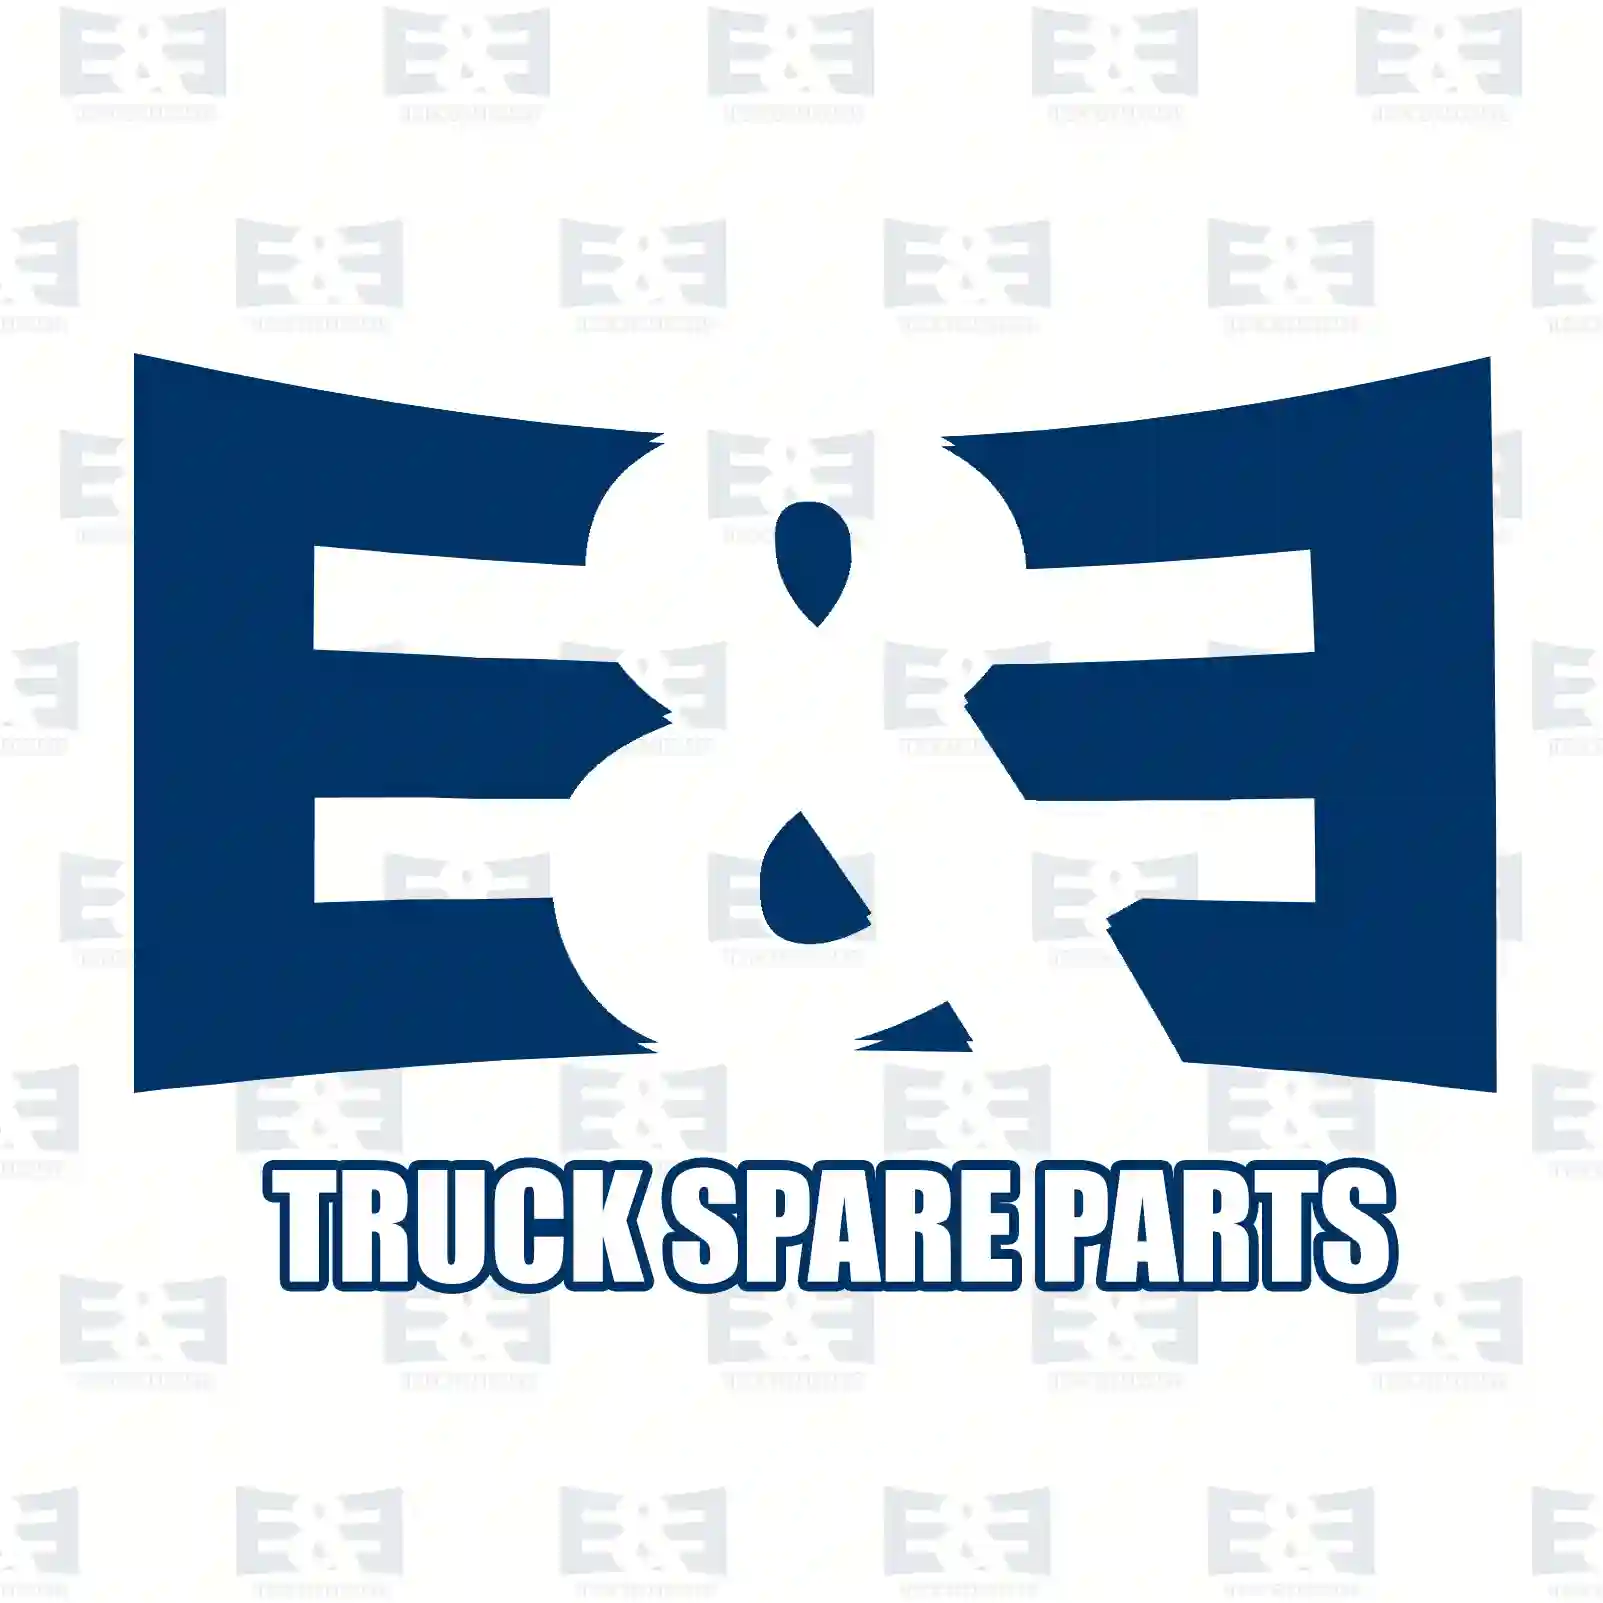 Overhaul kit, 2E2206885, 276888 ||  2E2206885 E&E Truck Spare Parts | Truck Spare Parts, Auotomotive Spare Parts Overhaul kit, 2E2206885, 276888 ||  2E2206885 E&E Truck Spare Parts | Truck Spare Parts, Auotomotive Spare Parts